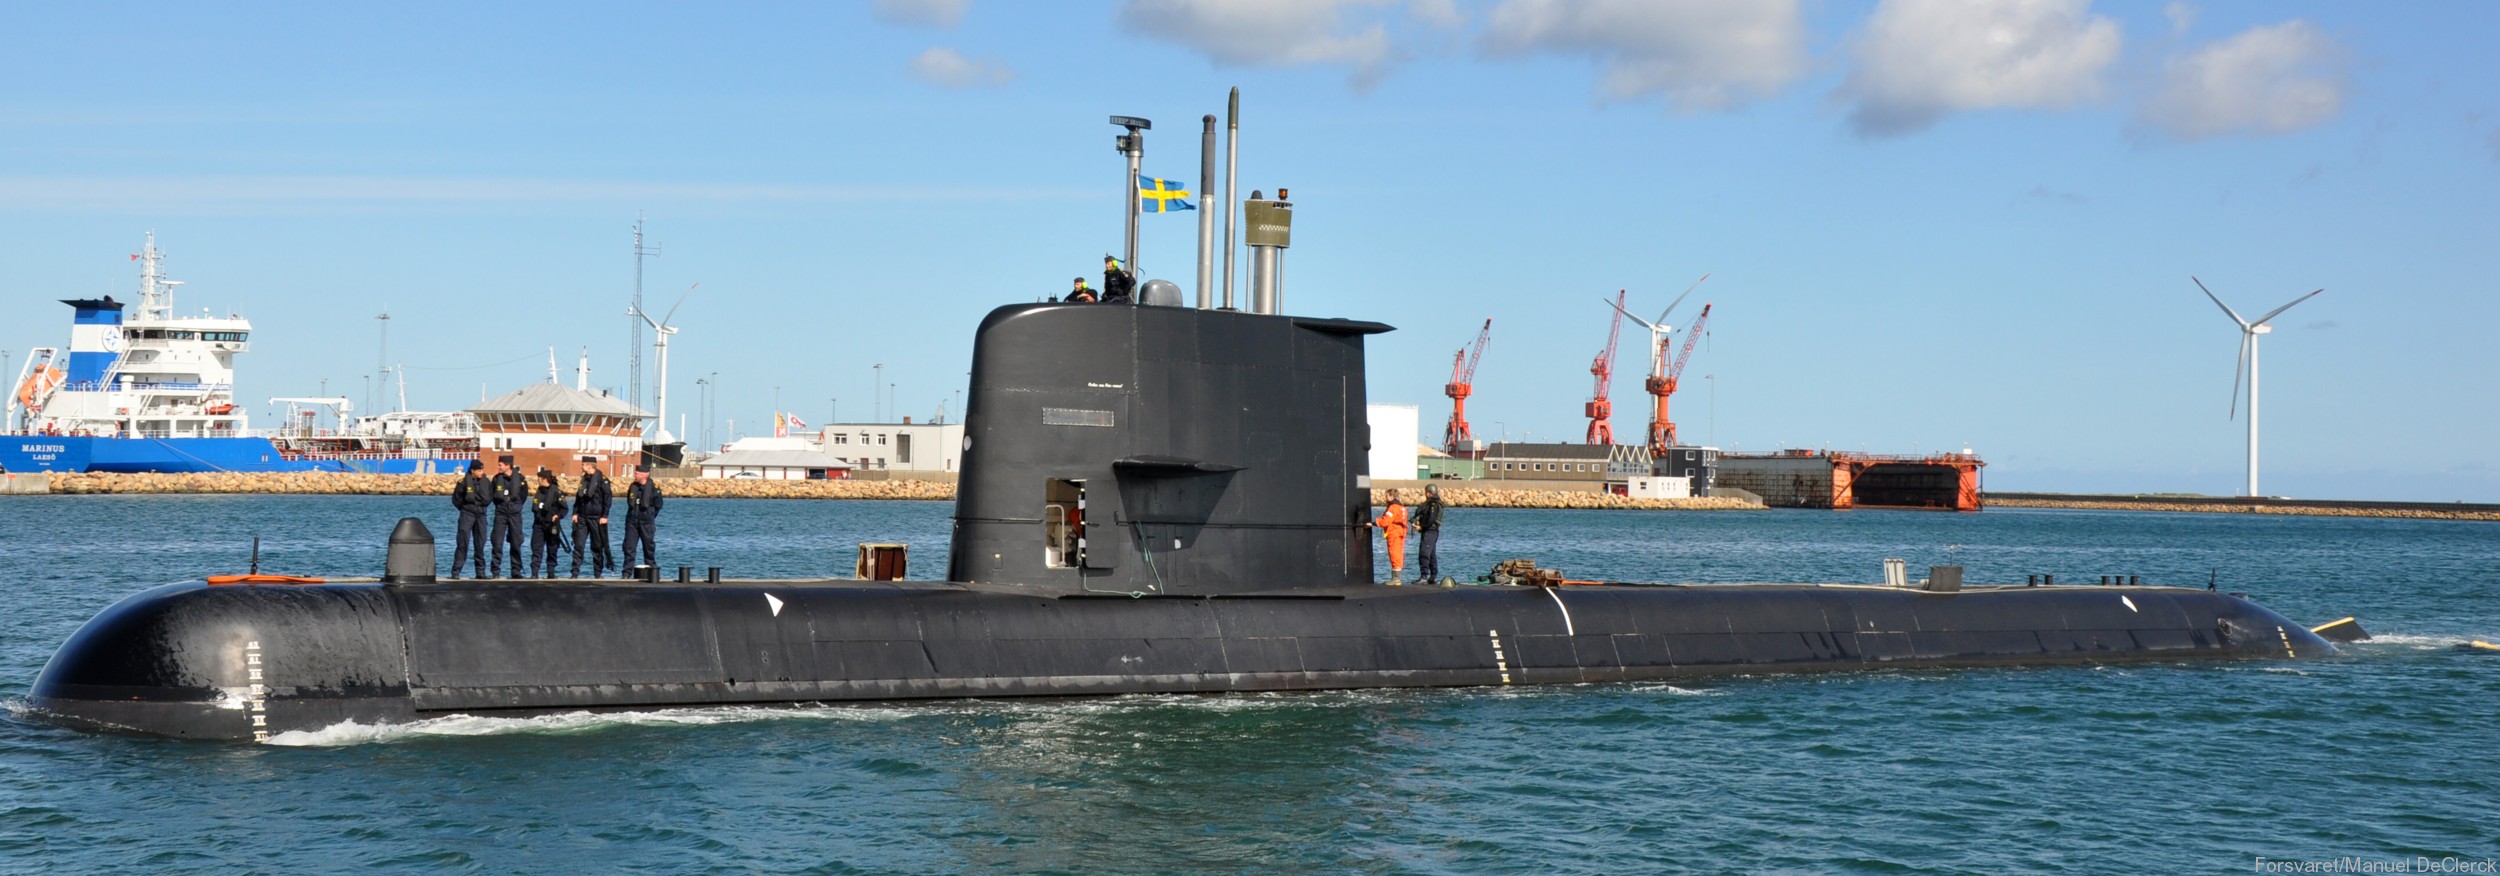 hswms hms gotland gtd class submarine ssk swedish navy svenska marinen försvarsmakten kockums 30